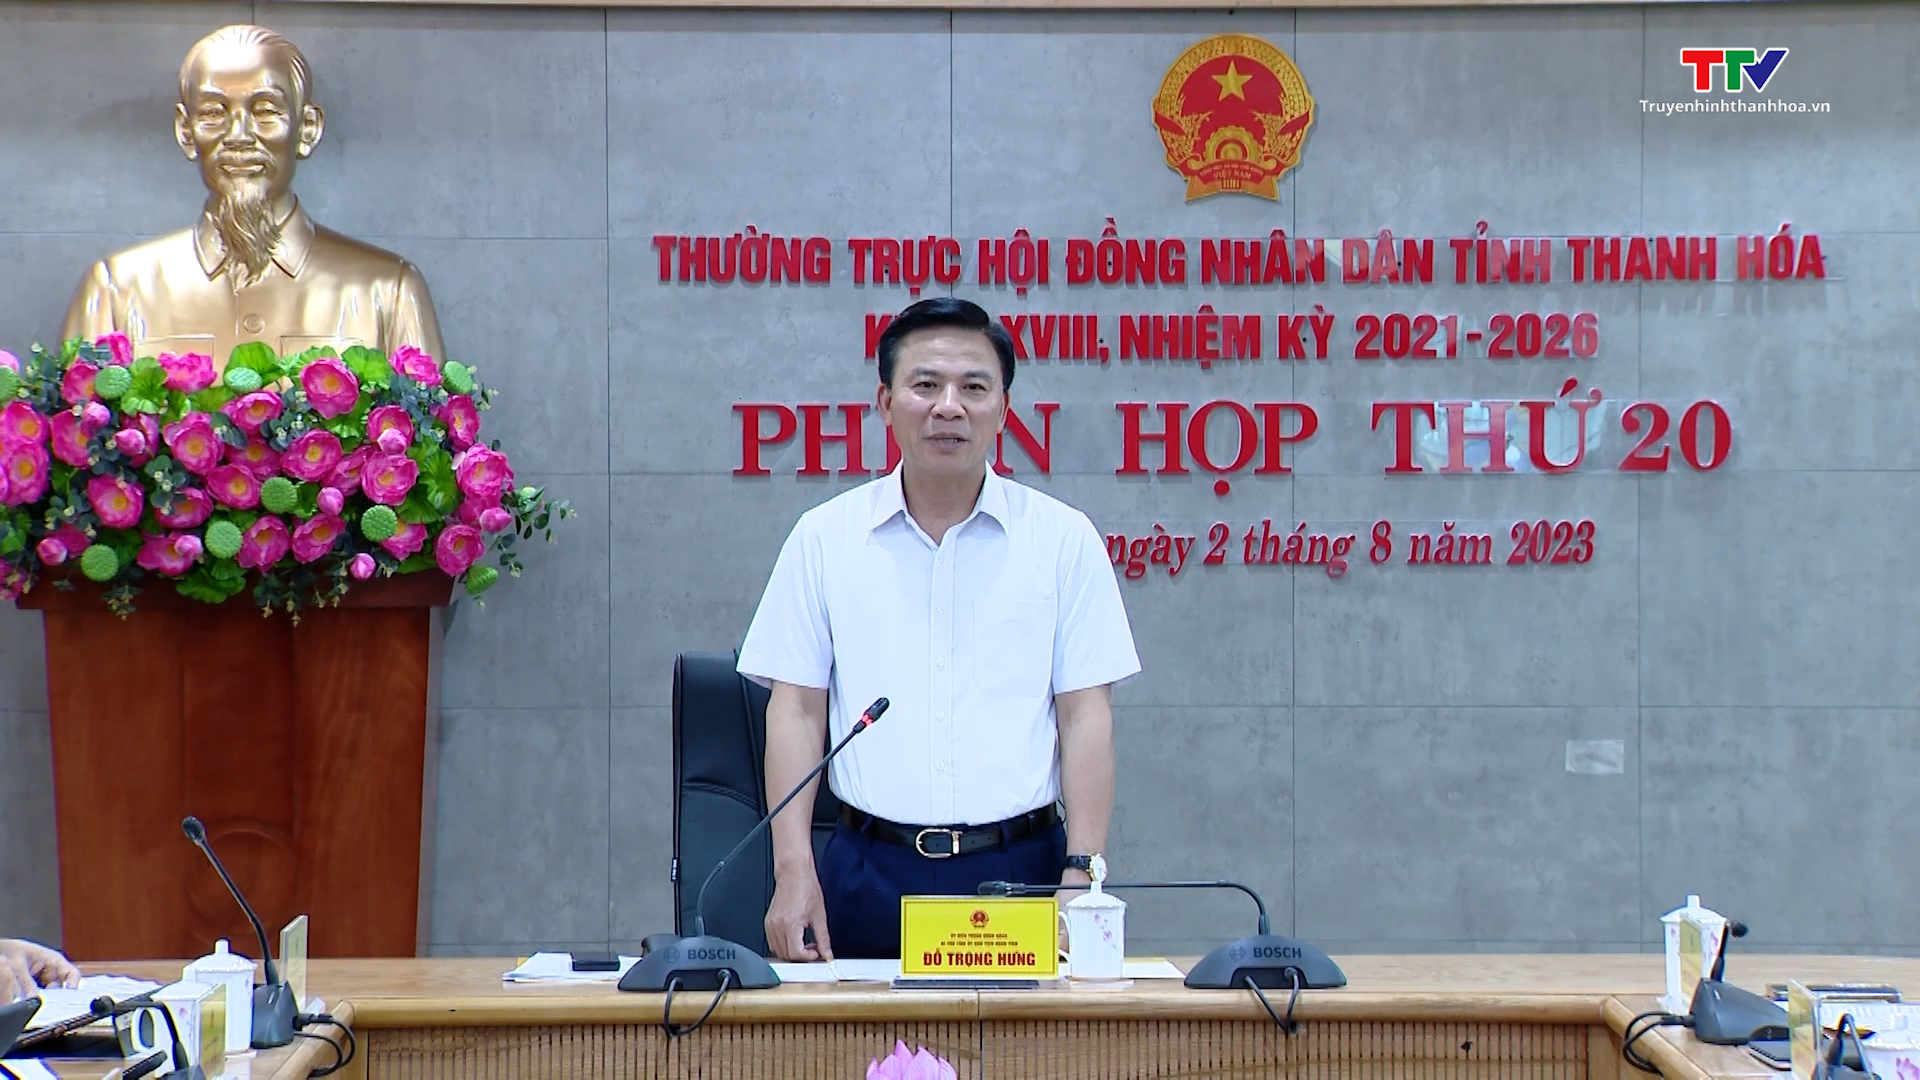 Phiên họp lần thứ 20 Thường trực Hội đồng Nhân dân tỉnh Thanh Hoá - Ảnh 4.